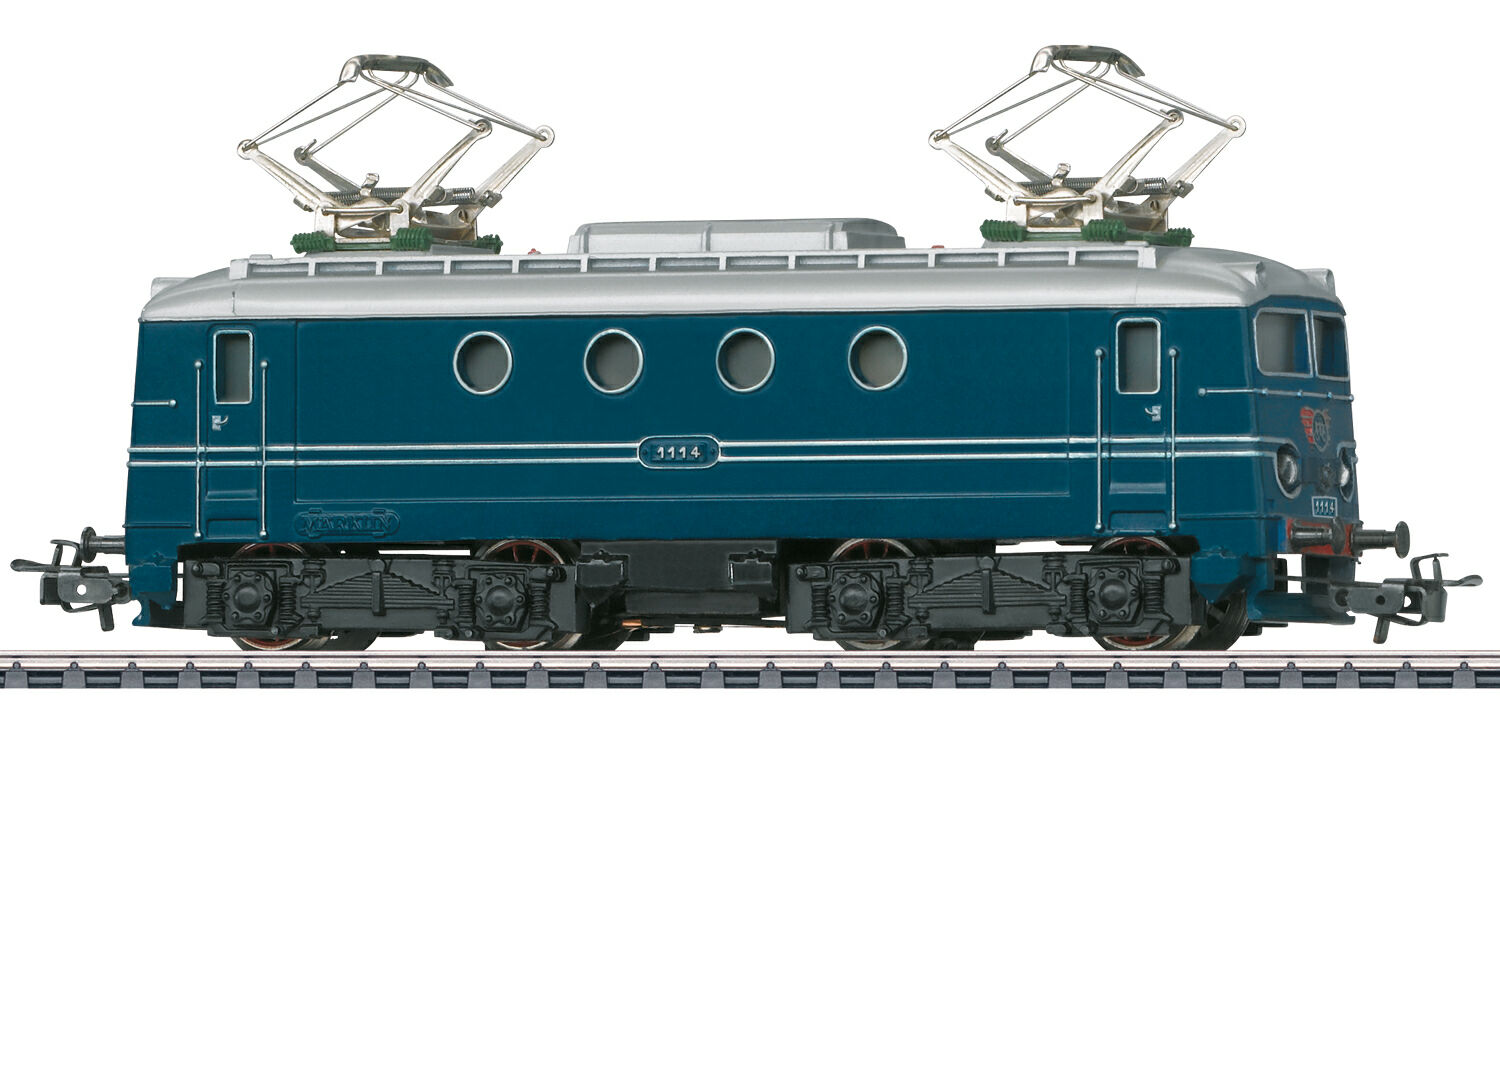 Model Railways | Beginners, Professionals & Collectors